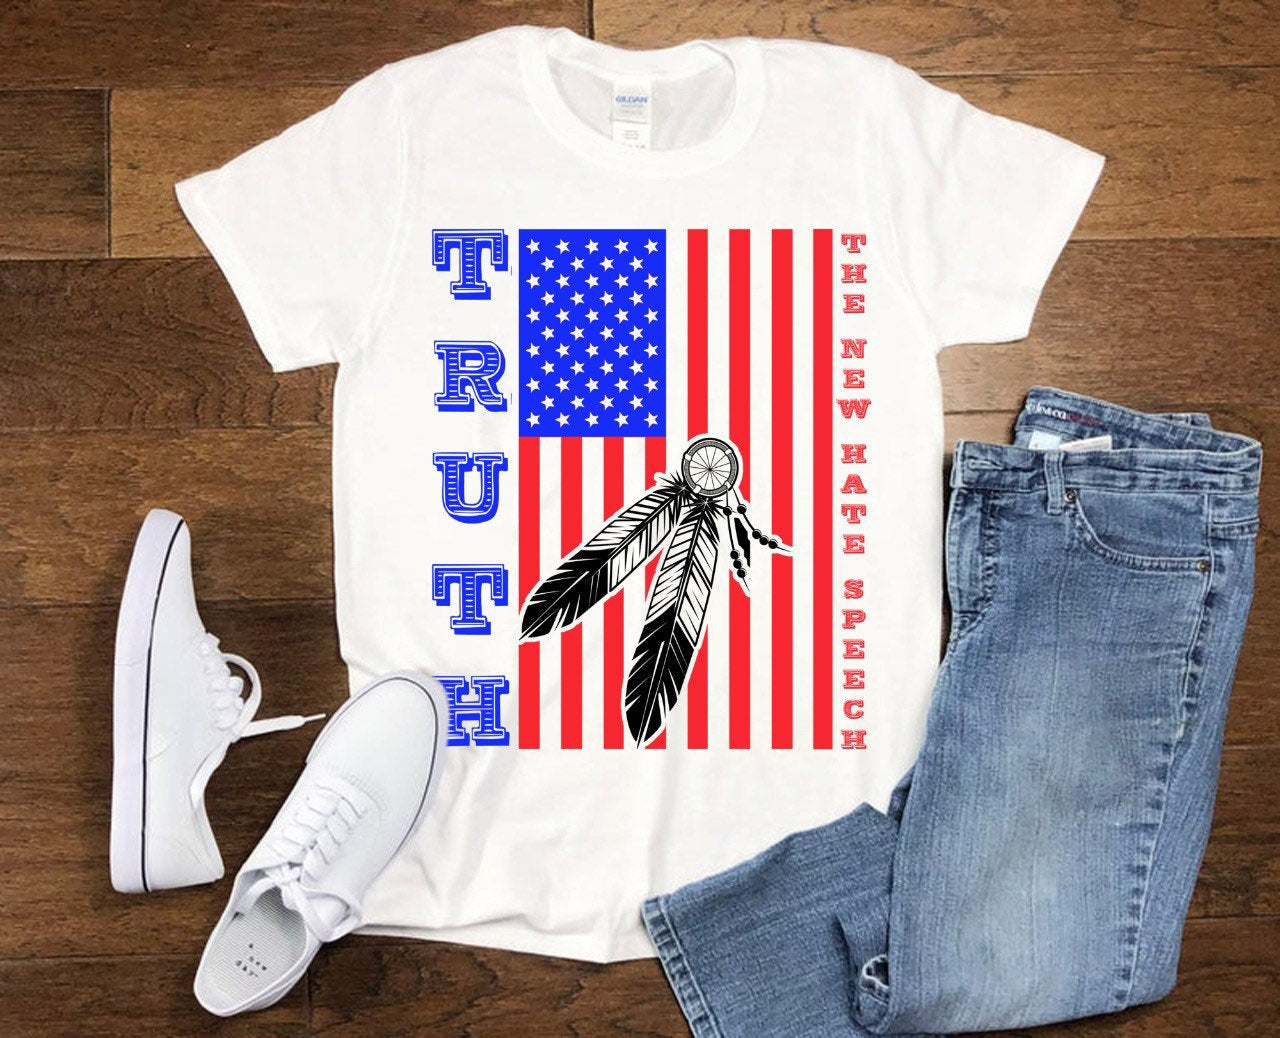 Verdad El nuevo discurso del odio | Pluma | Camisetas con la bandera estadounidense, corrección política, camisetas republicanas conservadoras, política de votantes, camiseta de votación - plusminusco.com